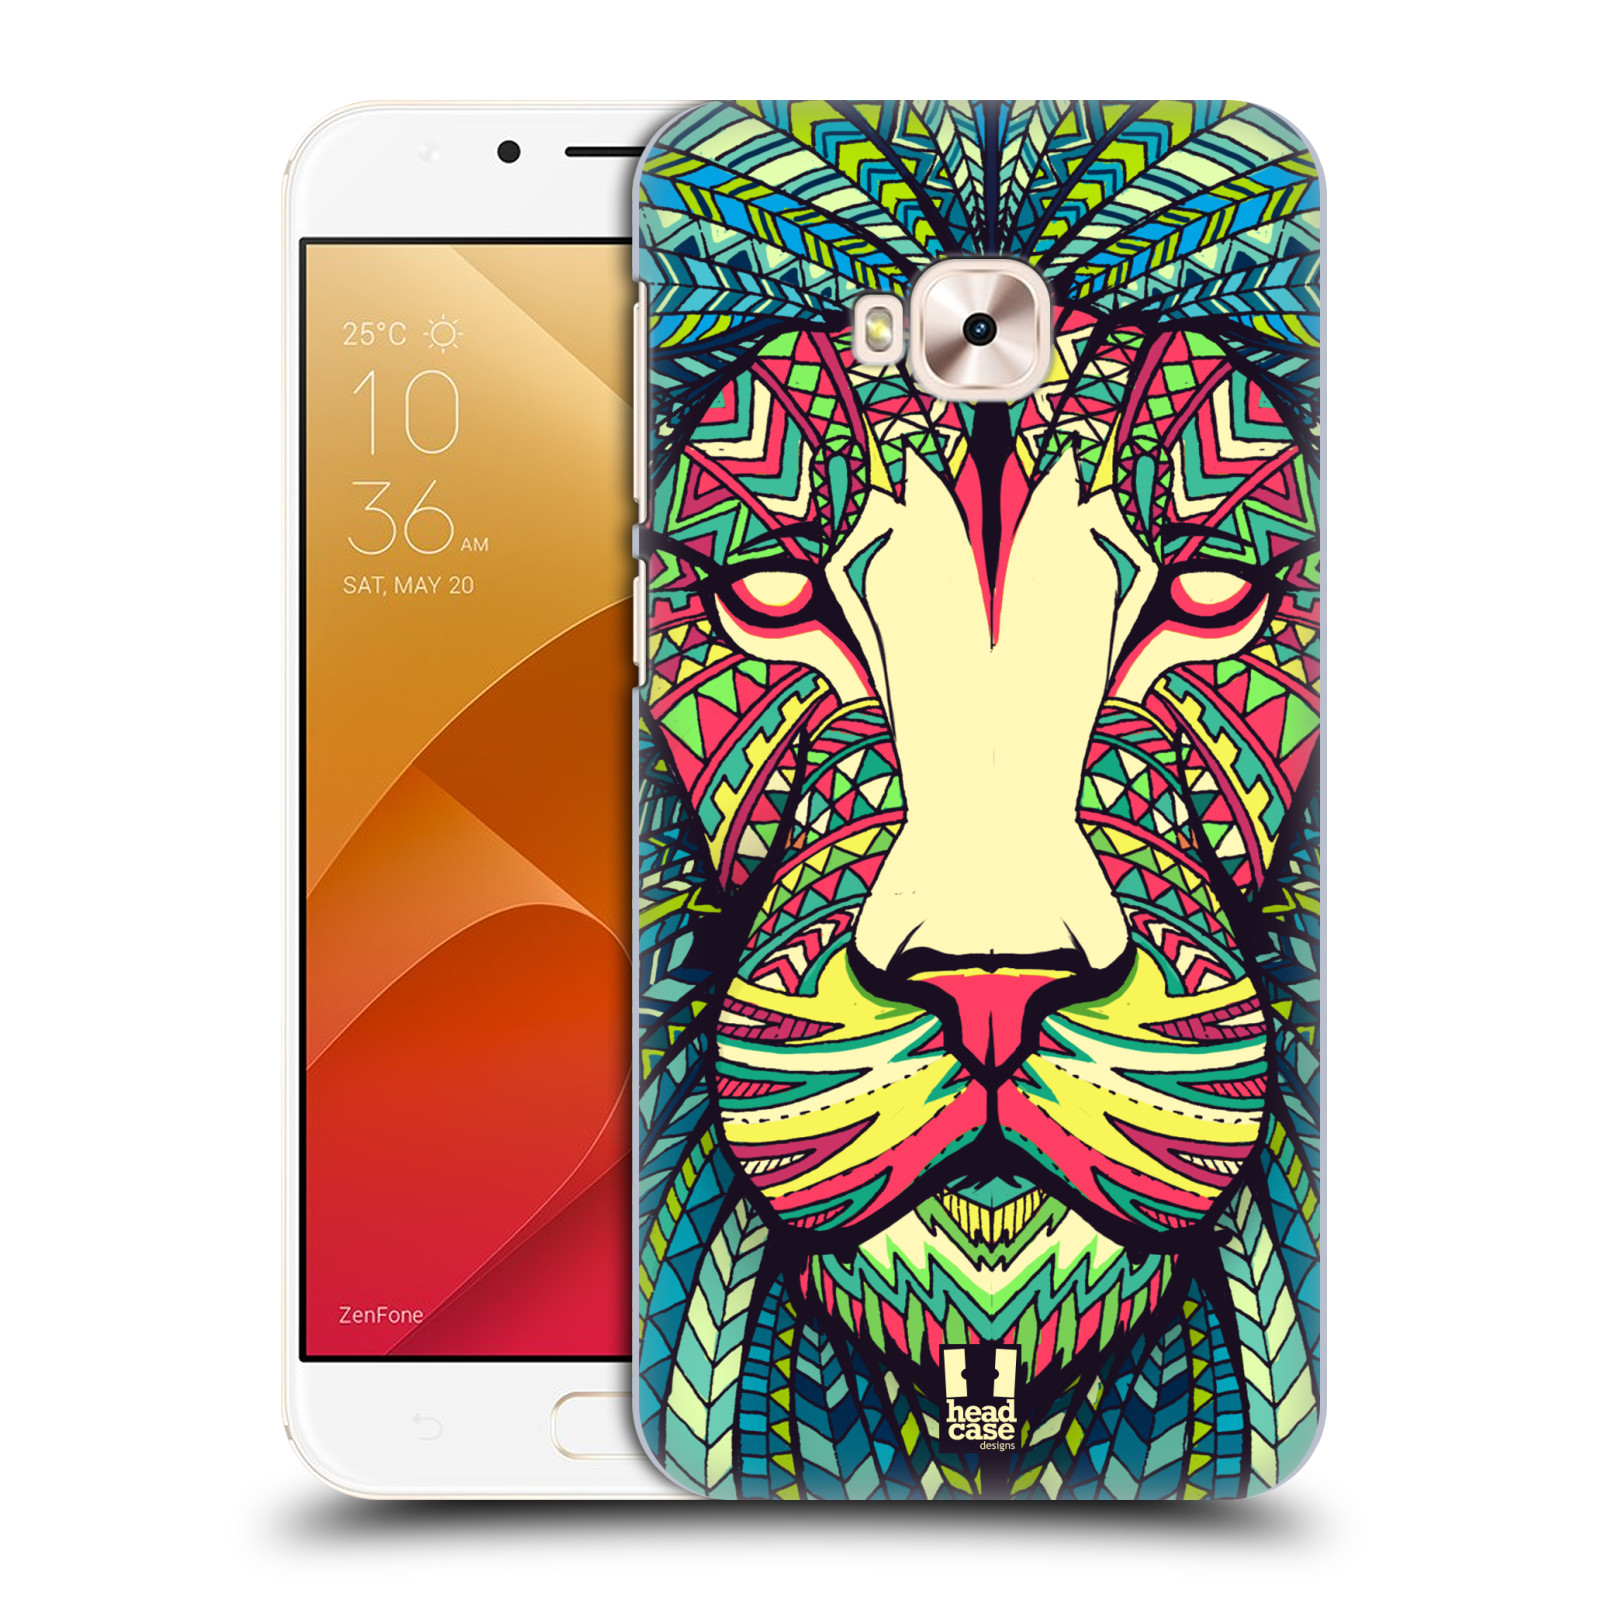 HEAD CASE plastový obal na mobil Asus Zenfone 4 Selfie Pro ZD552KL vzor Aztécký motiv zvíře lev